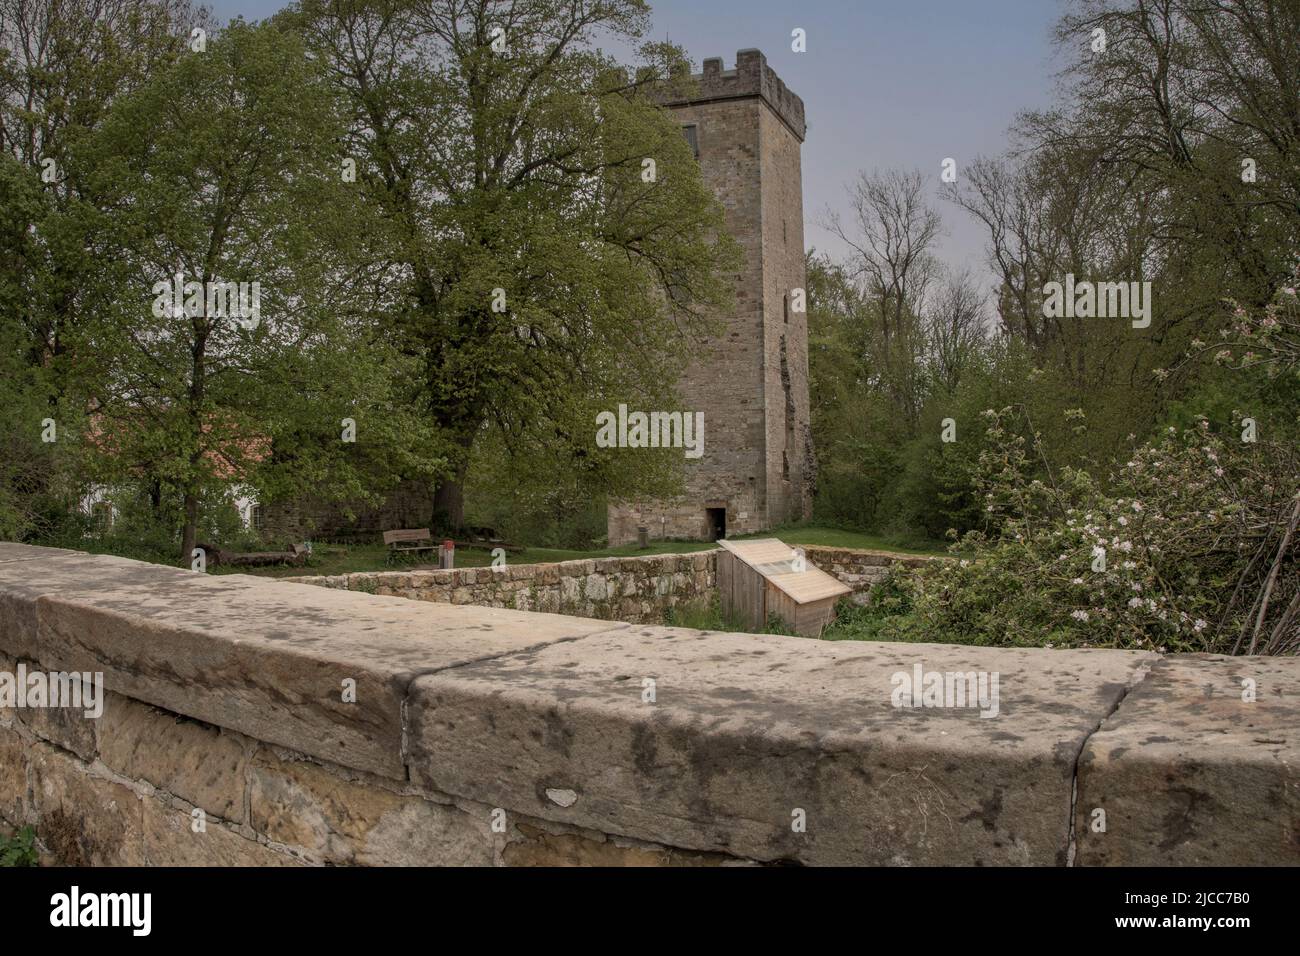 Der Burgturm ist bis heute begeh bar, hier ein Blick auf die alten Mauern mit dem Turm und die schöne und gepflegte Anlage Foto de stock